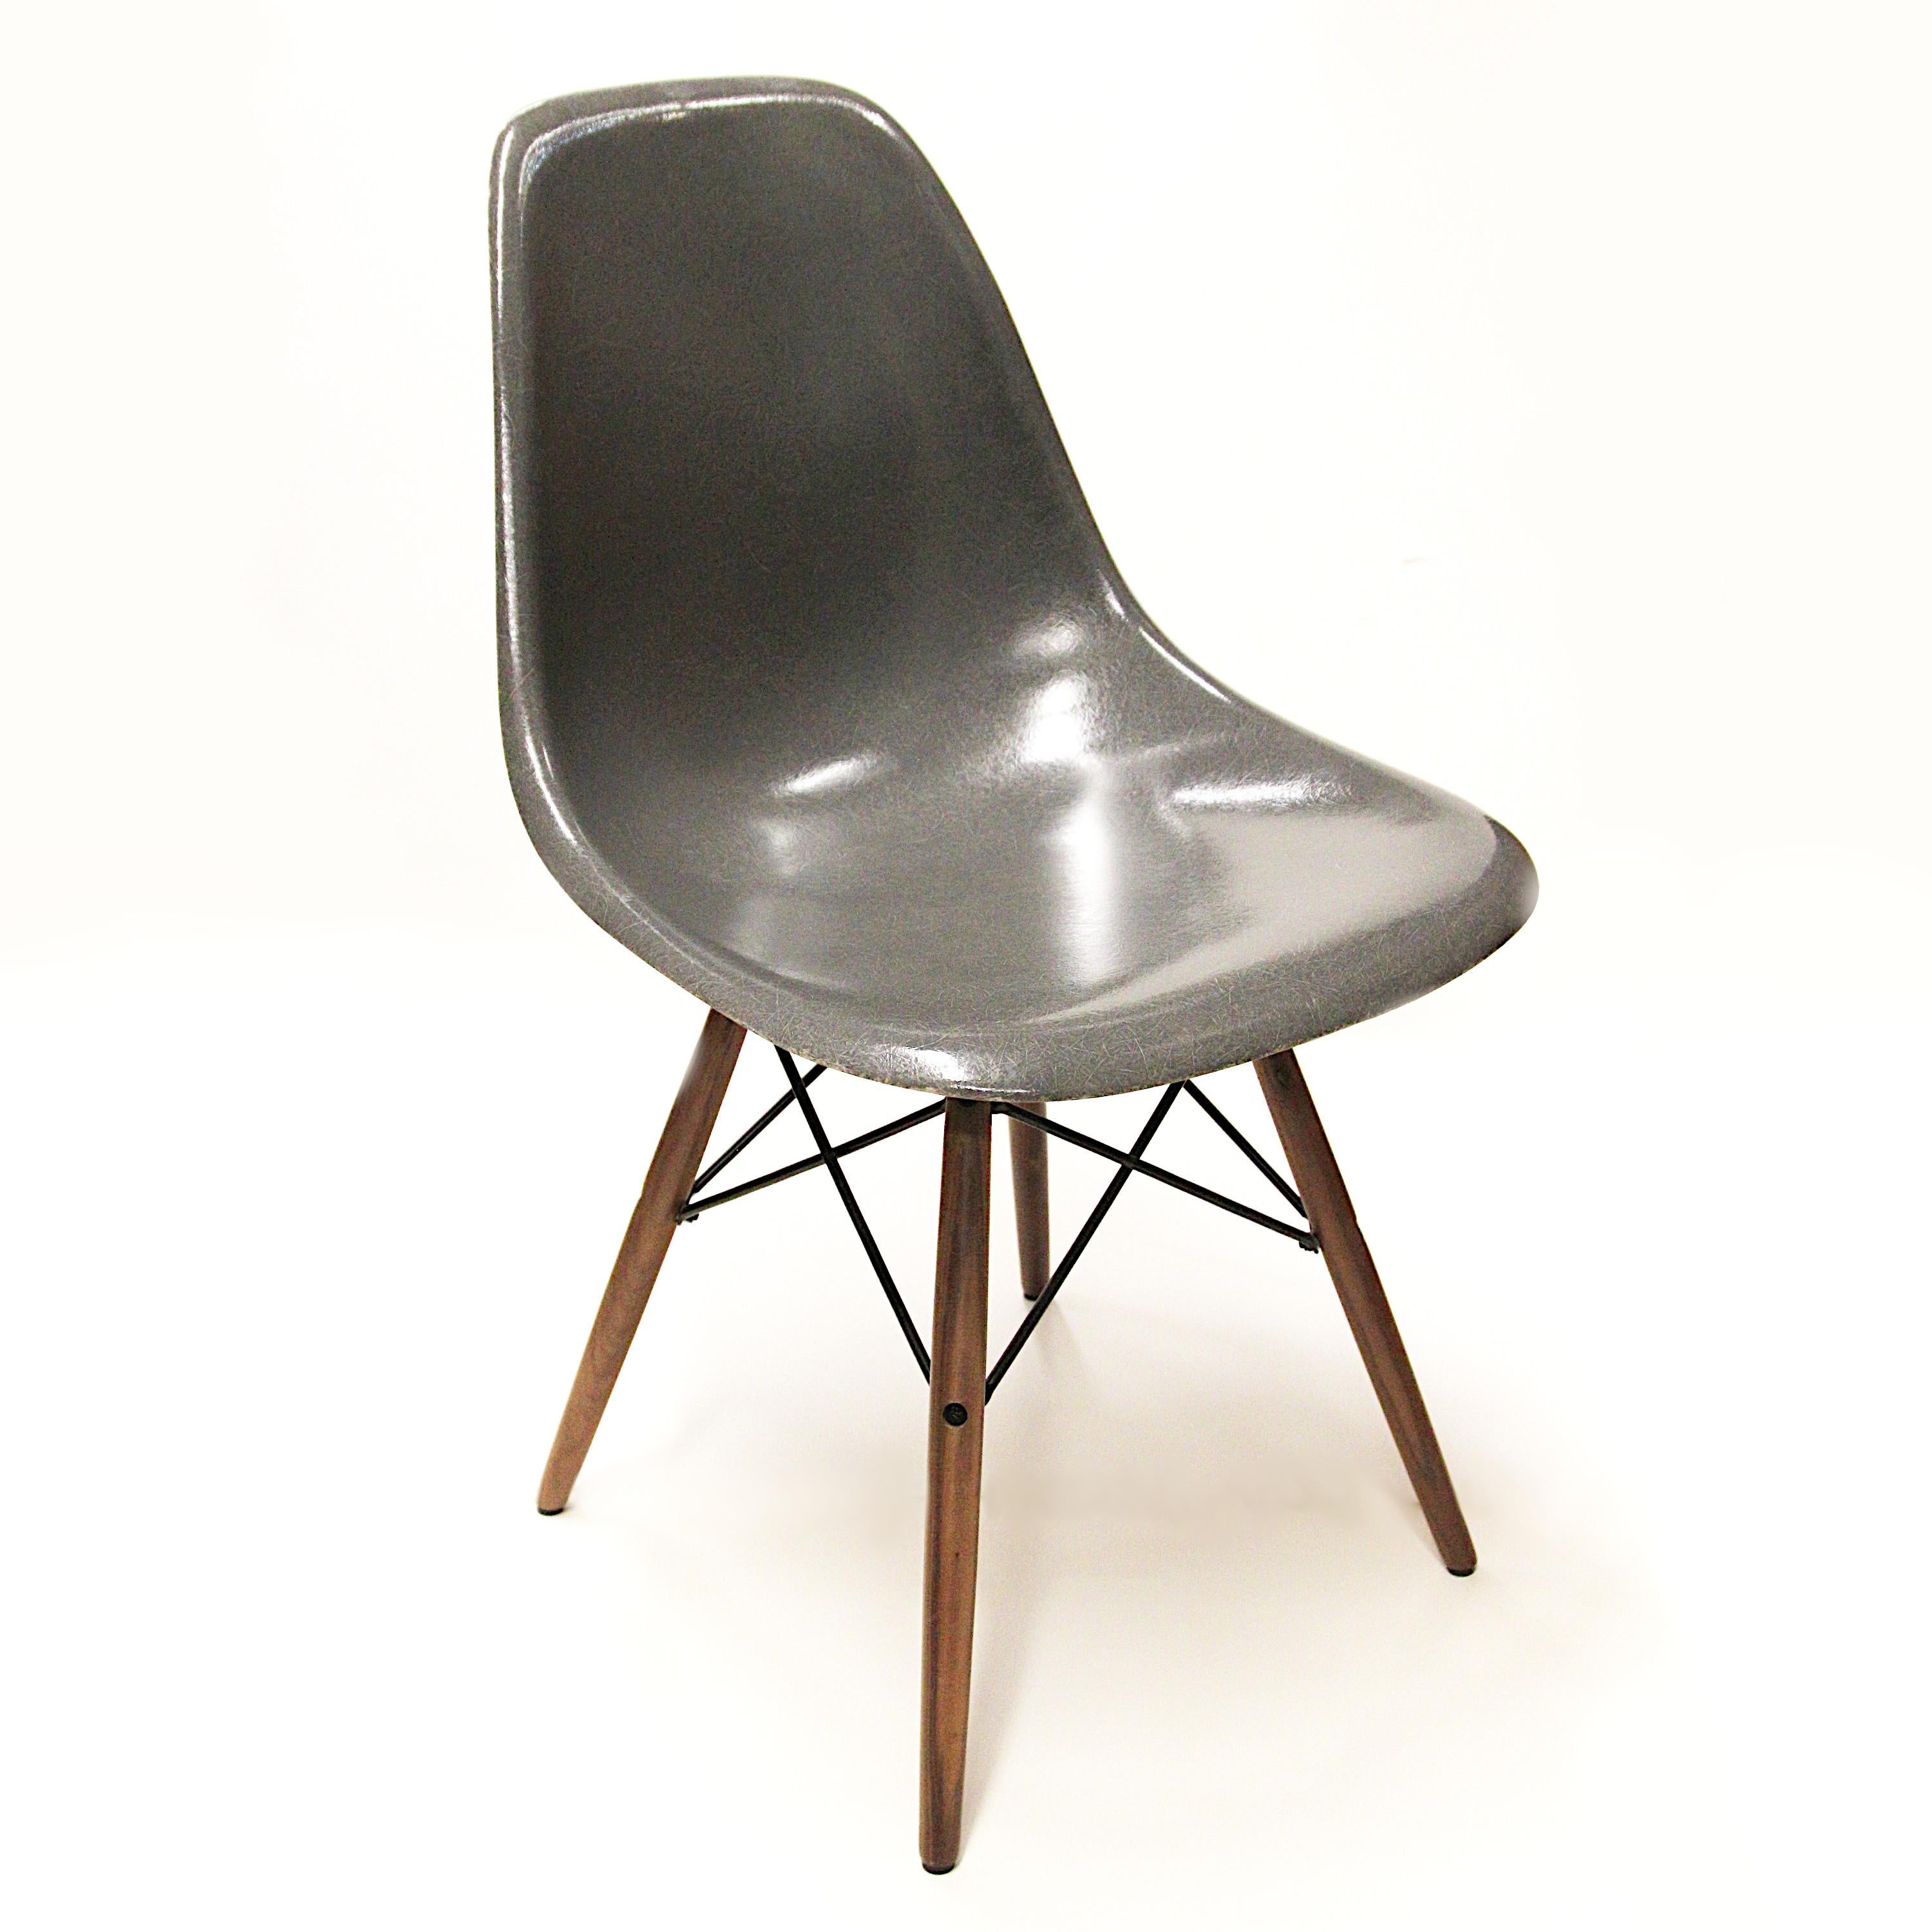 Fantastique ensemble de chaises à coque en fibre de verre vintage de Charles & Ray Eames pour Herman Miller. Les chaises sont d'une couleur rare 